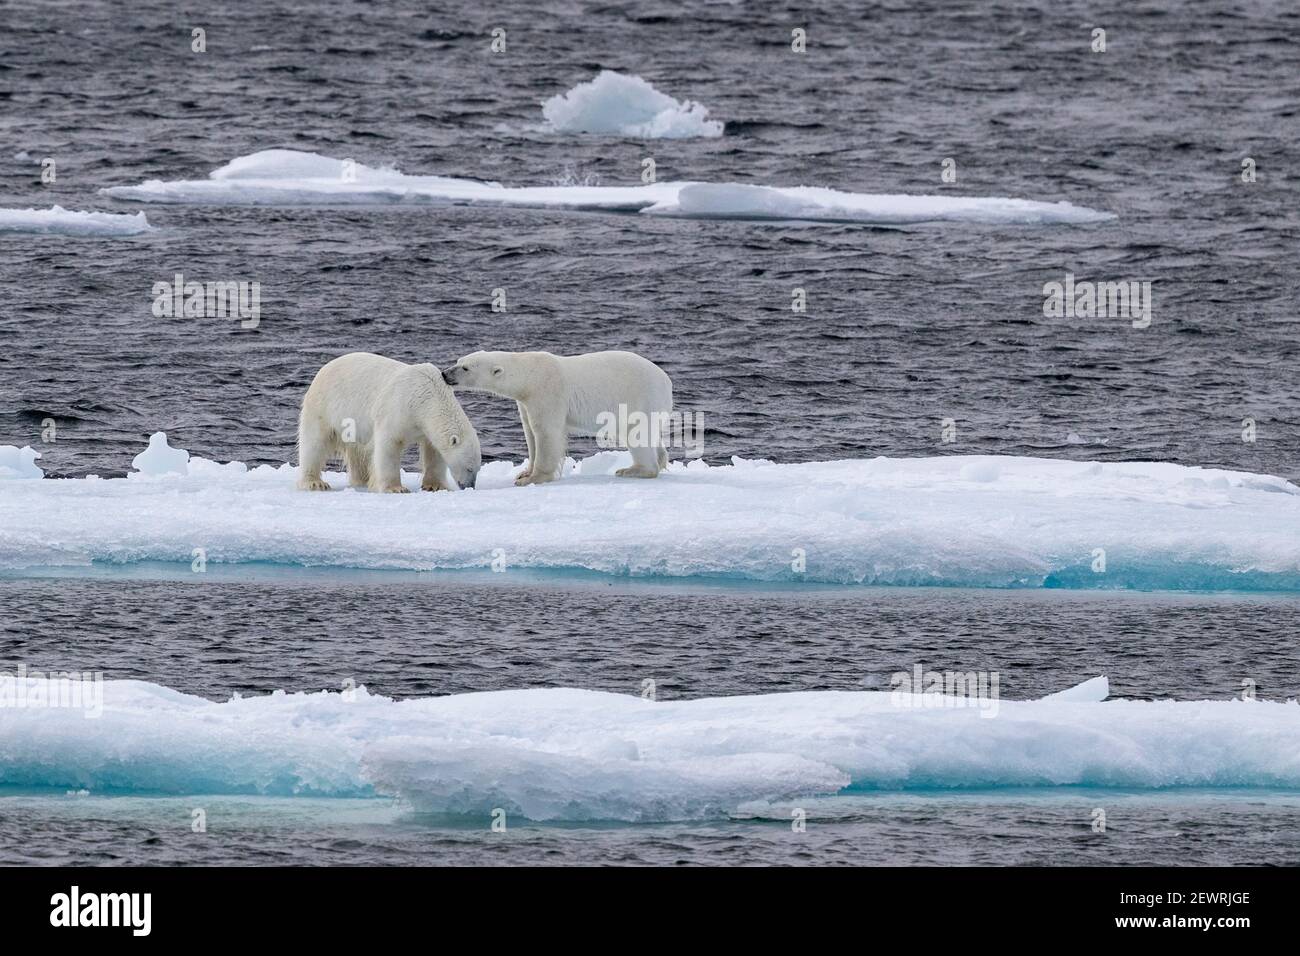 Une paire d'ours polaires frères et sœurs probables (Ursus maritimus), chenal Queen's, île Cornwallis, Nunavut, Canada, Amérique du Nord Banque D'Images